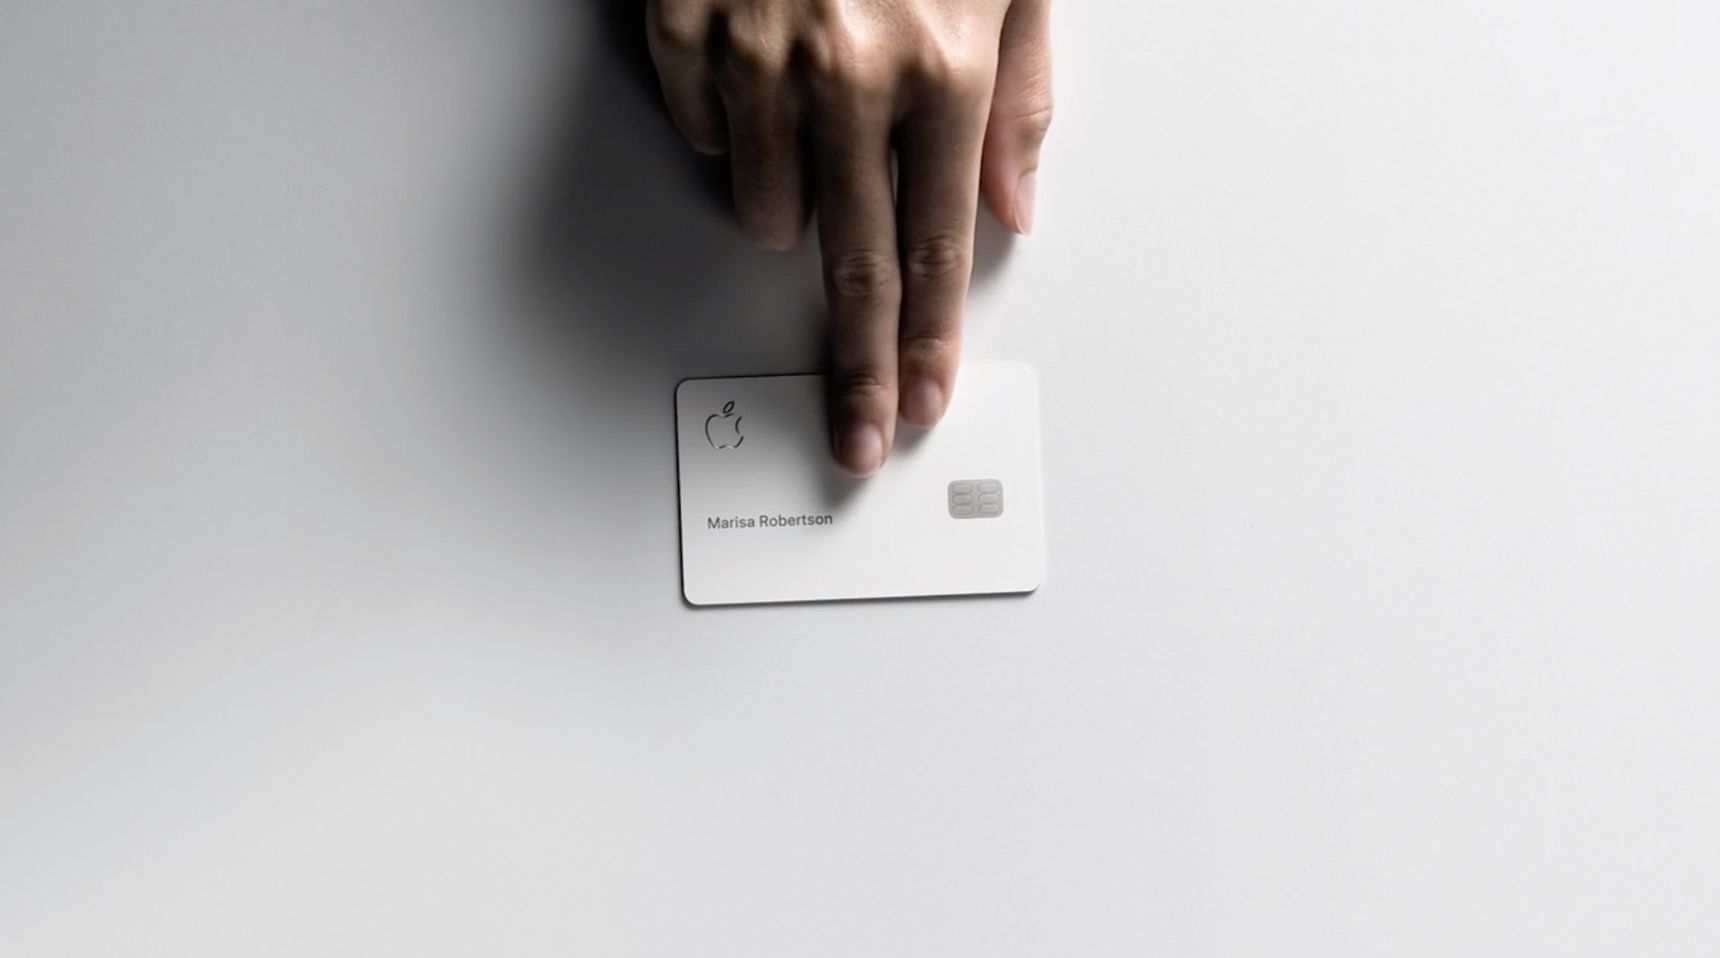 Appel xác nhận Apple Card sẽ bắt đầu cho đặt hàng vào tháng 8